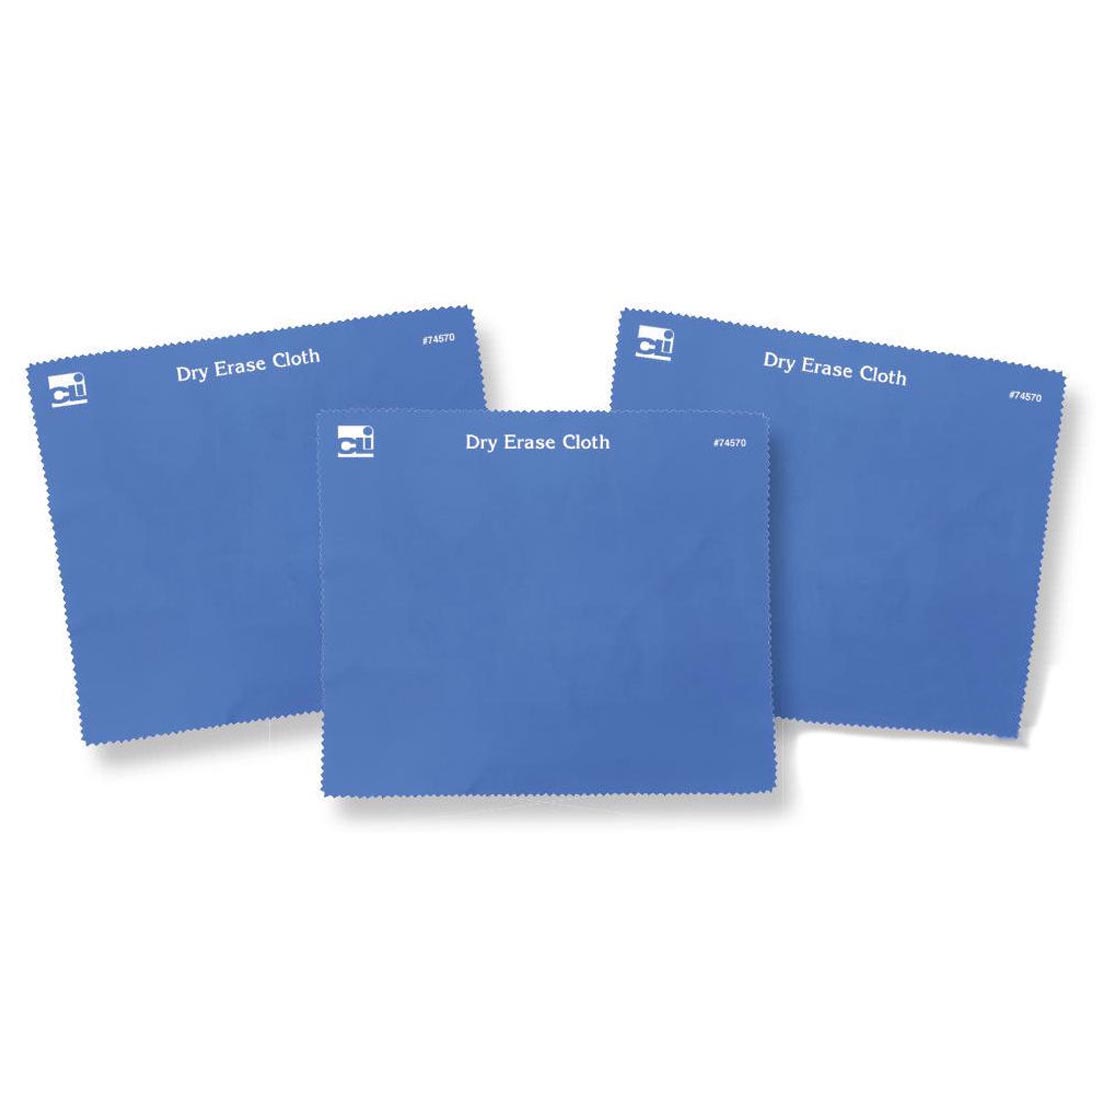 Three Blue Dry Erase Cloths